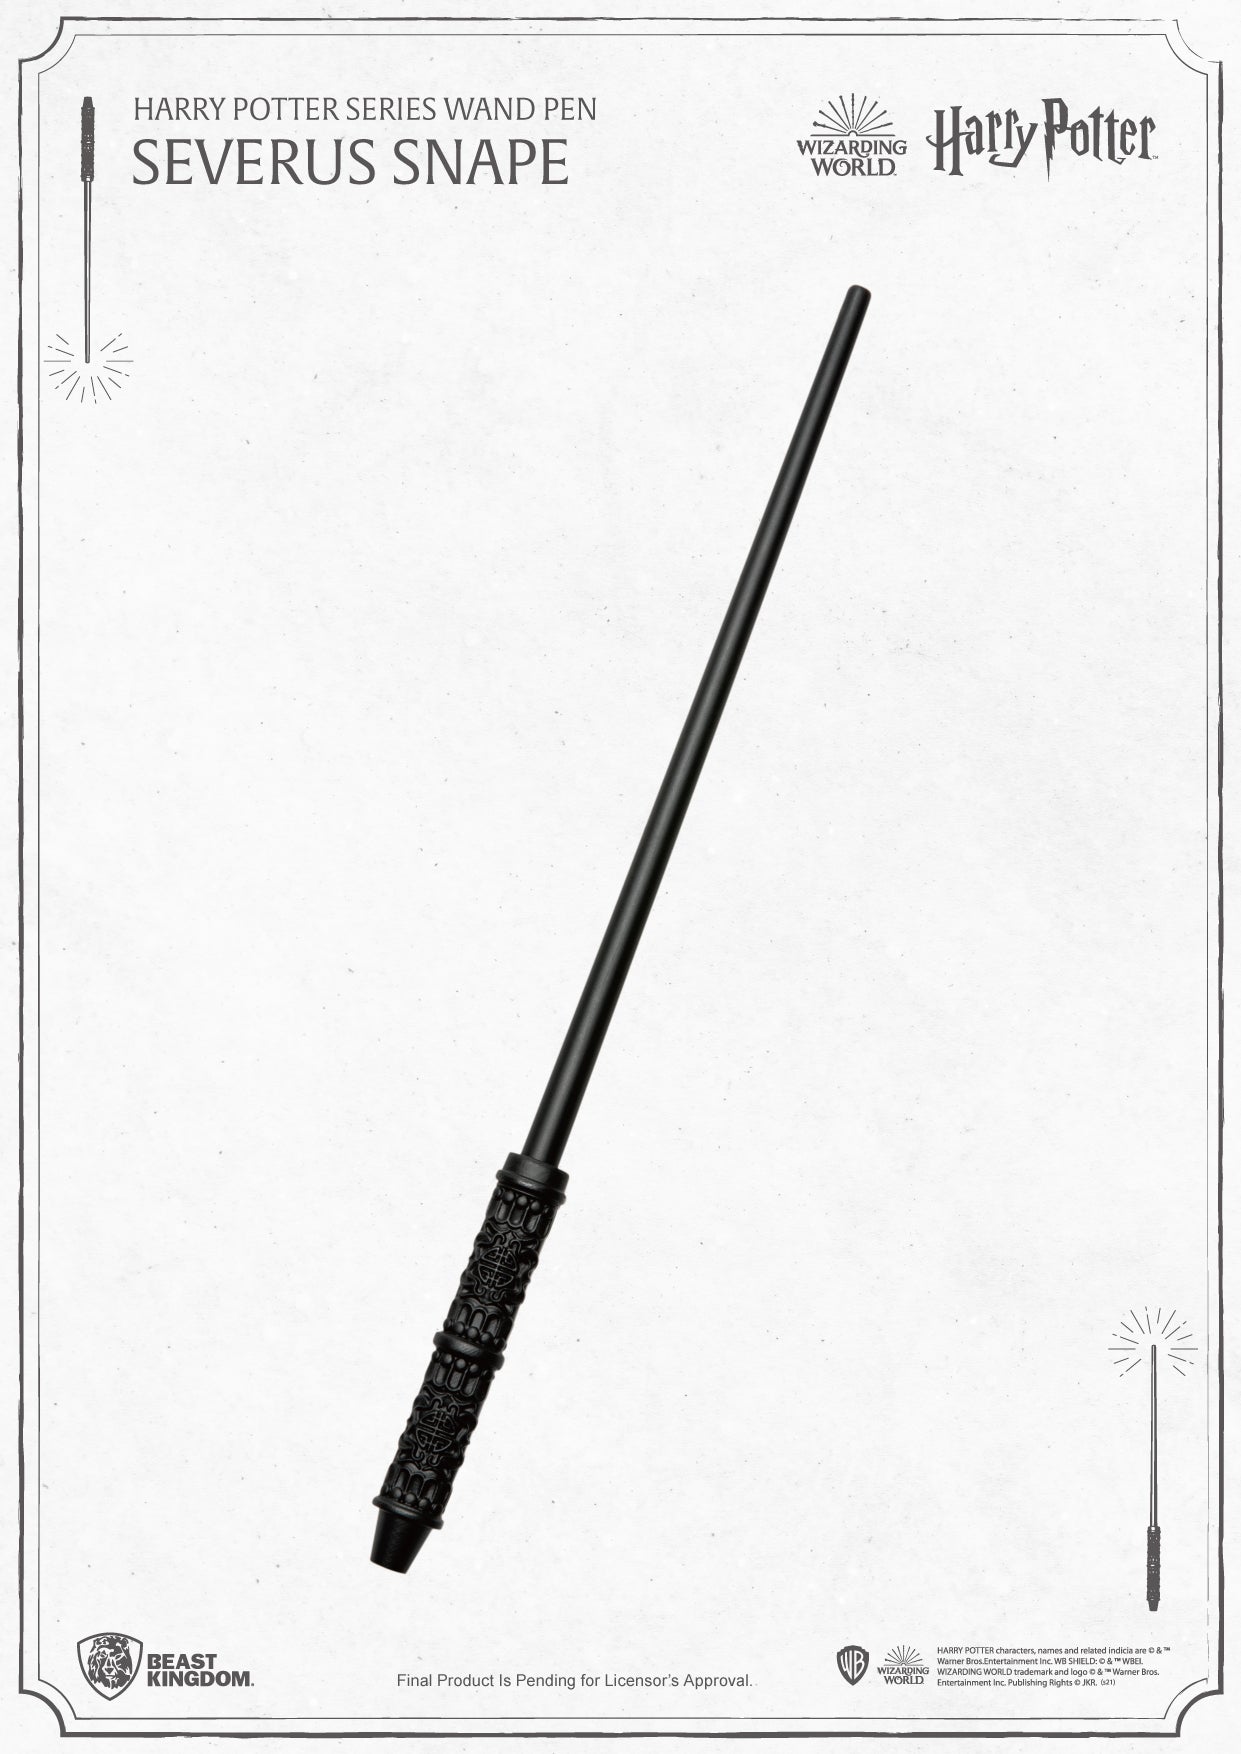 哈利波特系列魔杖笔西弗勒斯·斯内普 PEN-001-6